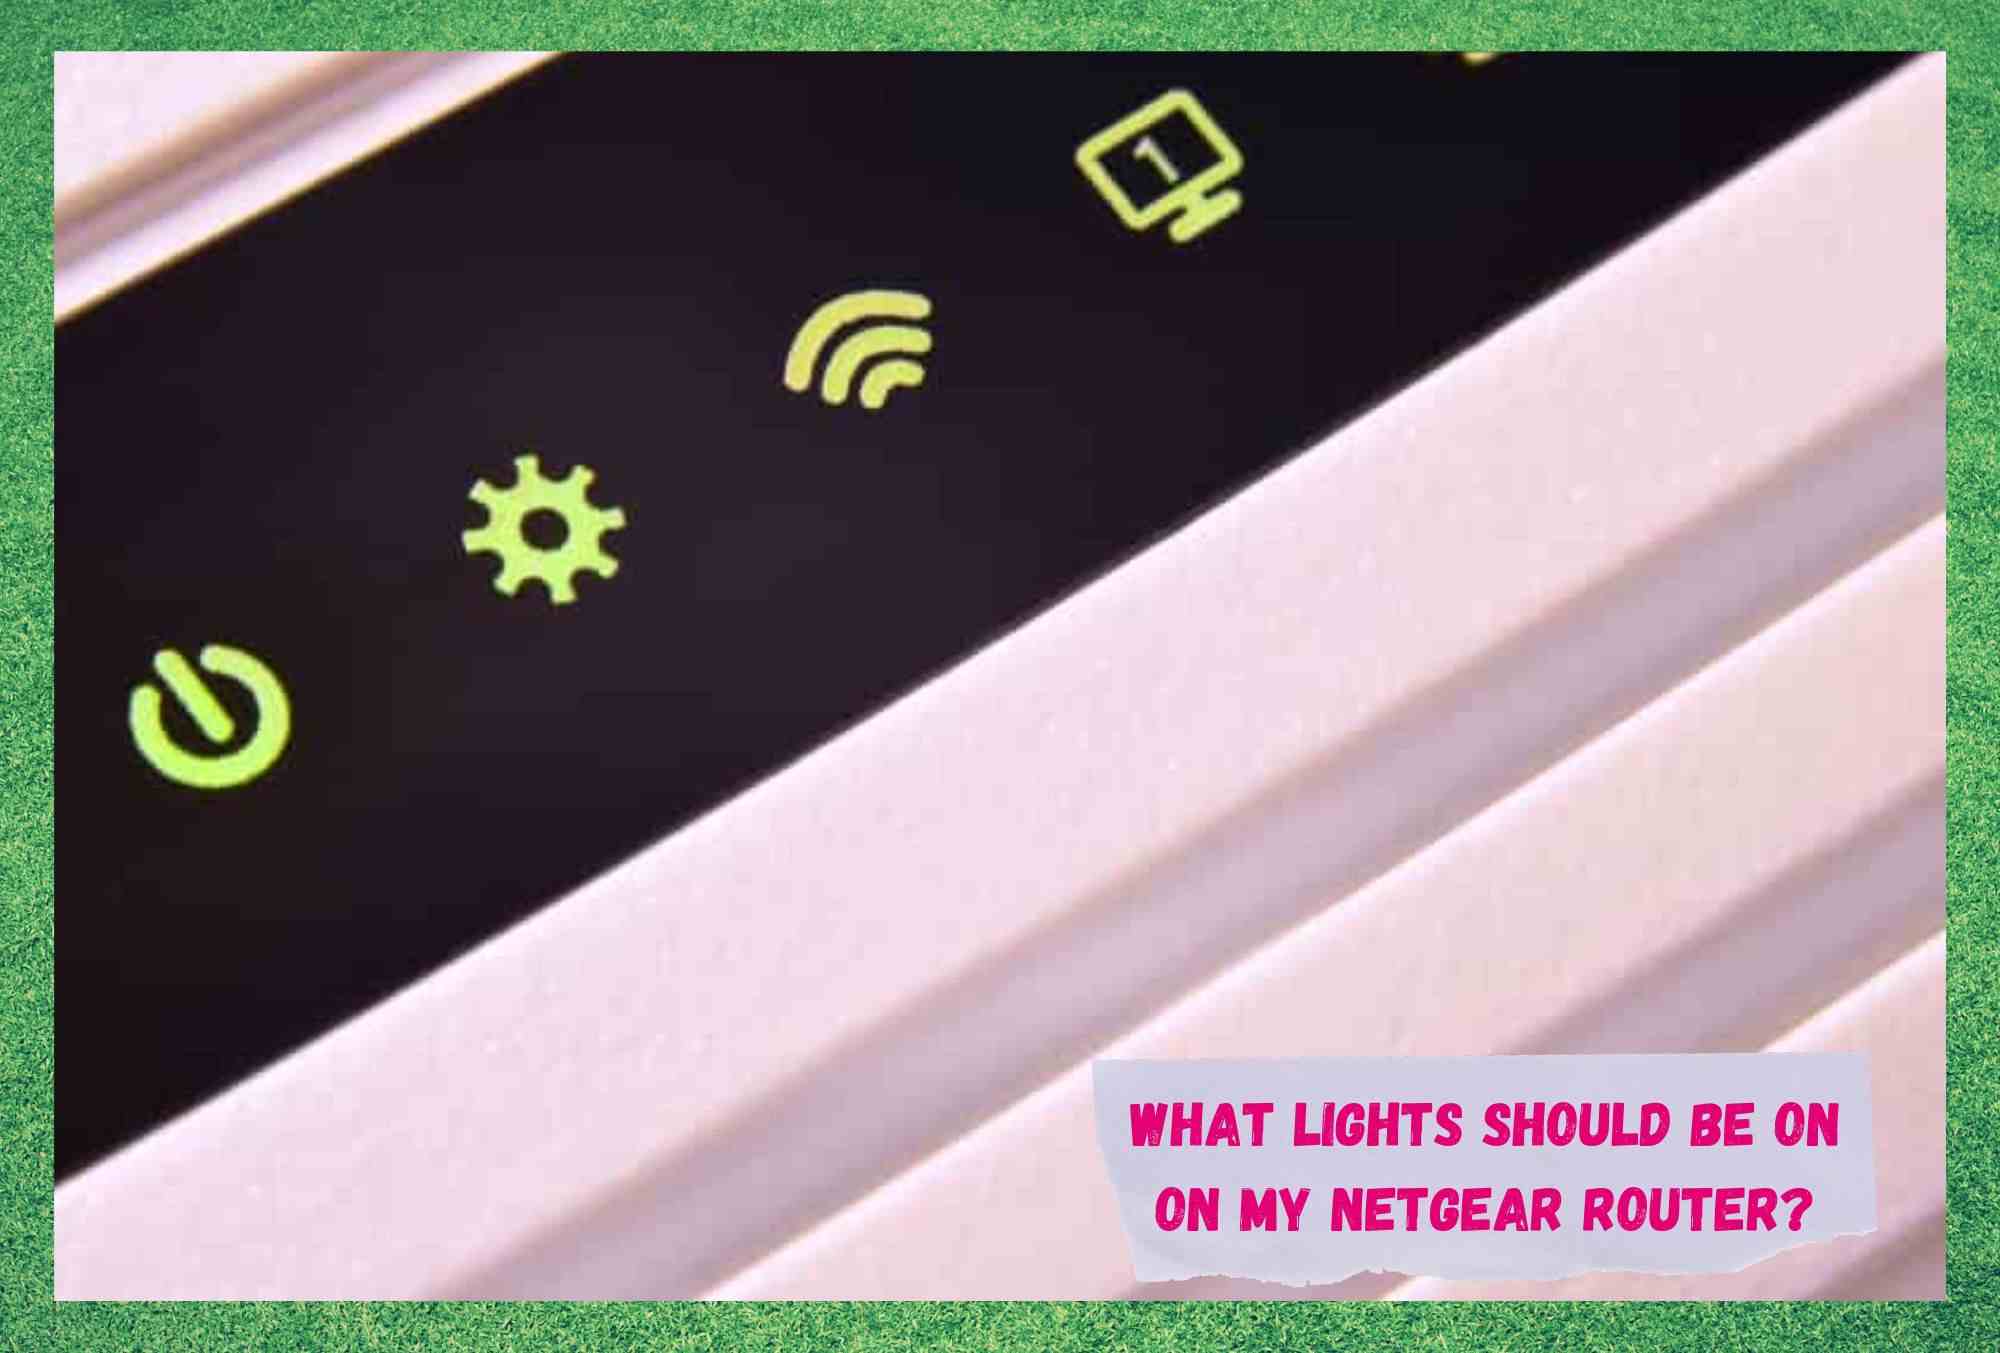 Koja svjetla bi trebala biti na mom Netgear ruteru? (odgovoreno)